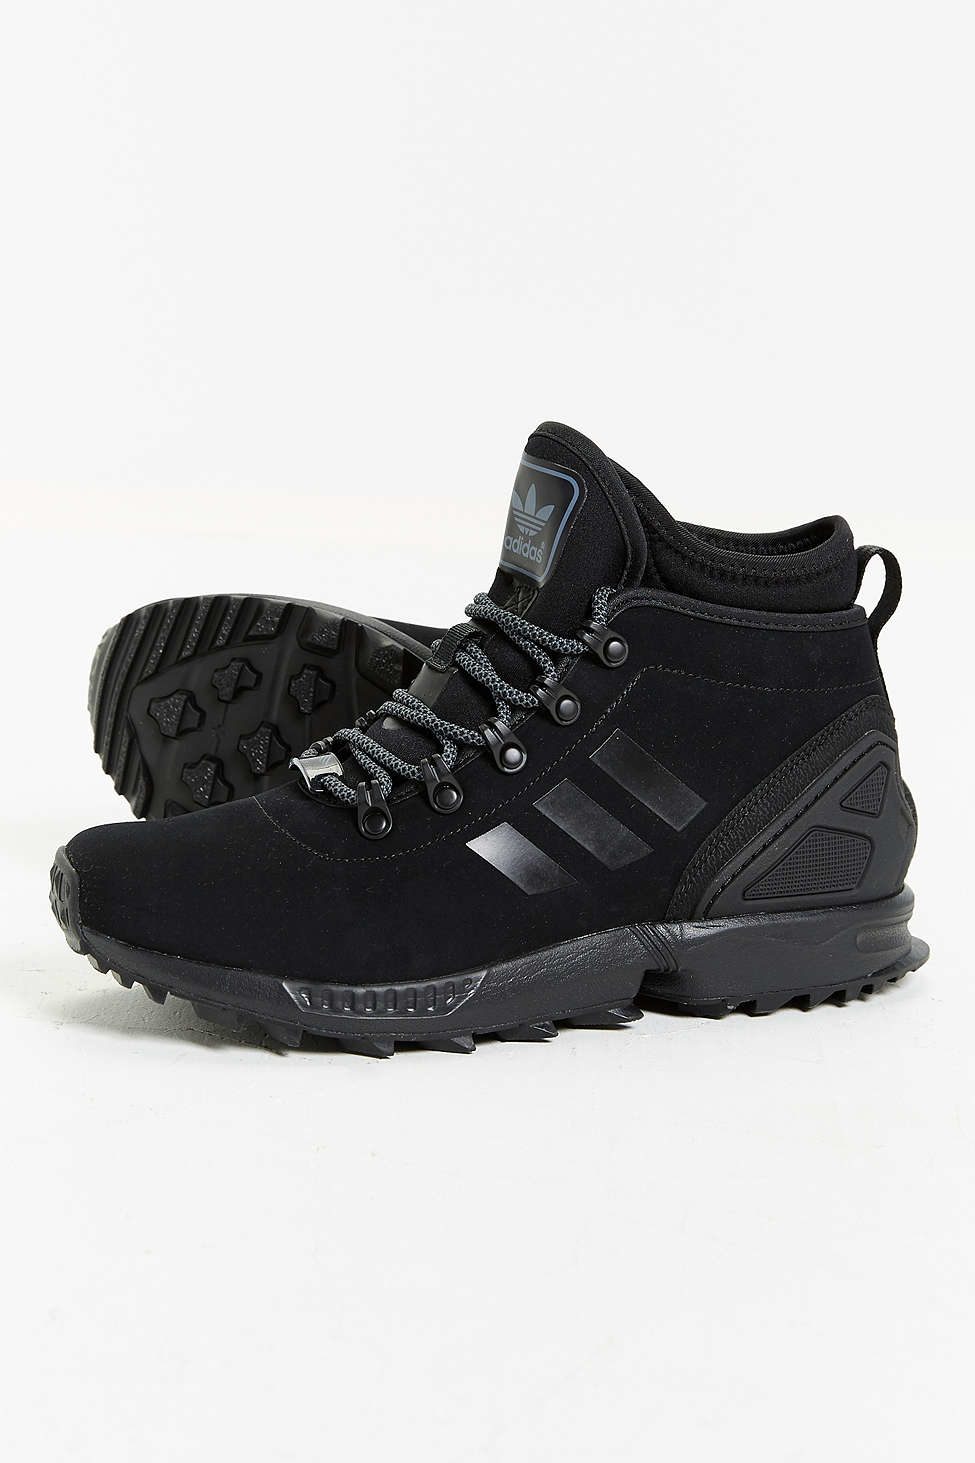 adidas Originals Zx Flux Leather Sneakerboot in Black for Men - Lyst